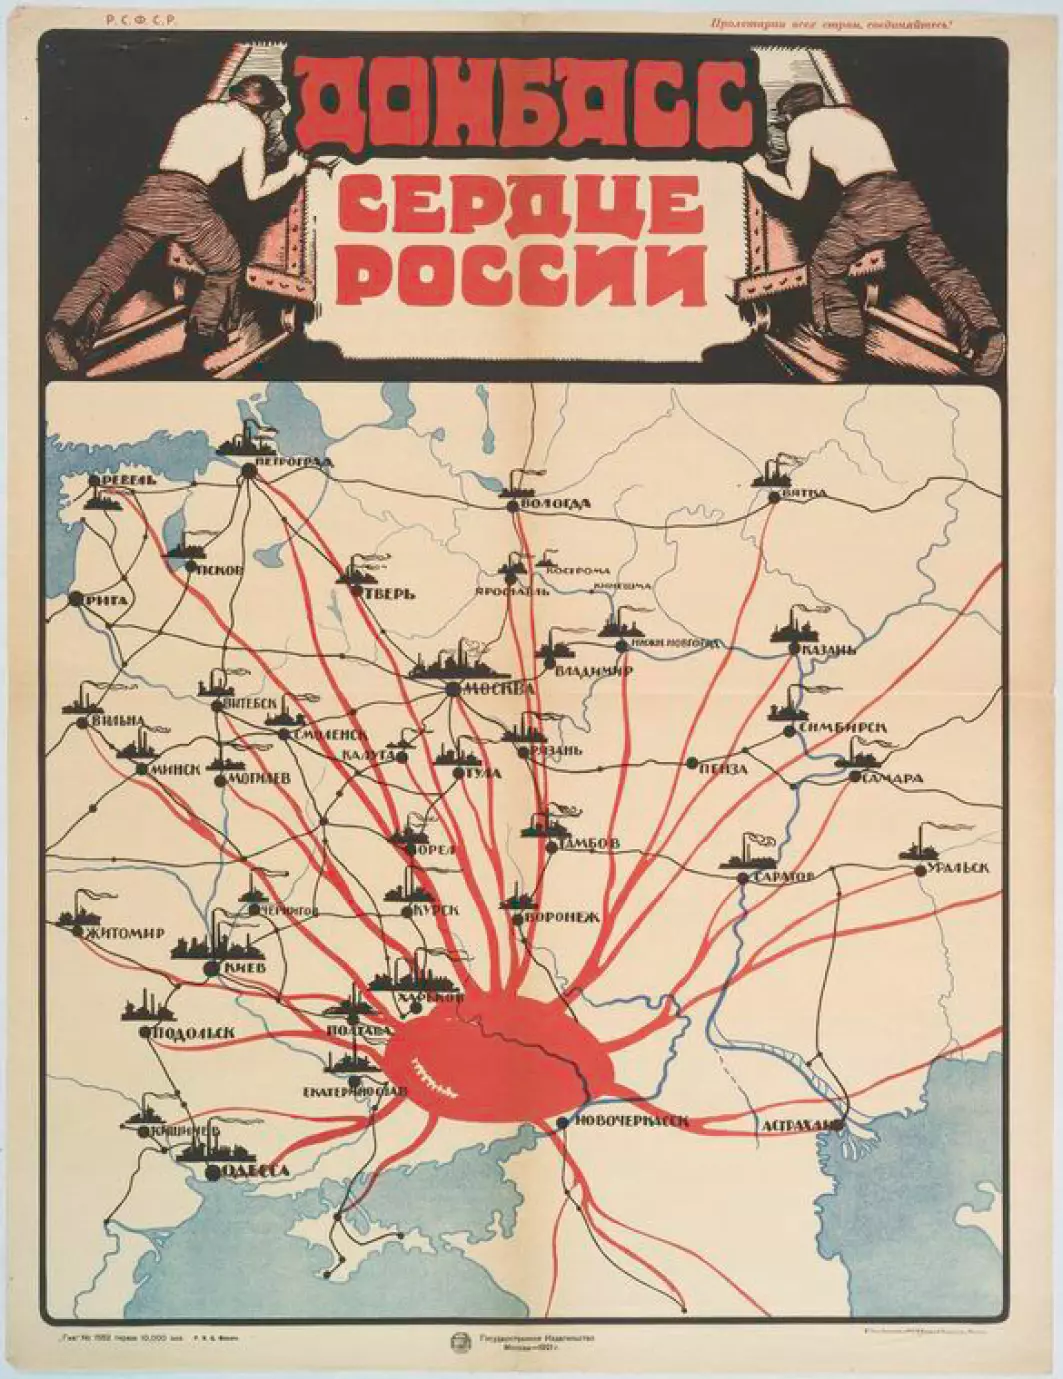 Donbass regionen blir på denne gamle propagandaplakaten fra Sovjet fremstilt som det bankende hjertet i Sovjetunionen, med årer som strekker seg til Kiev, Riga, Moskva og andre storbyer i Unionen.